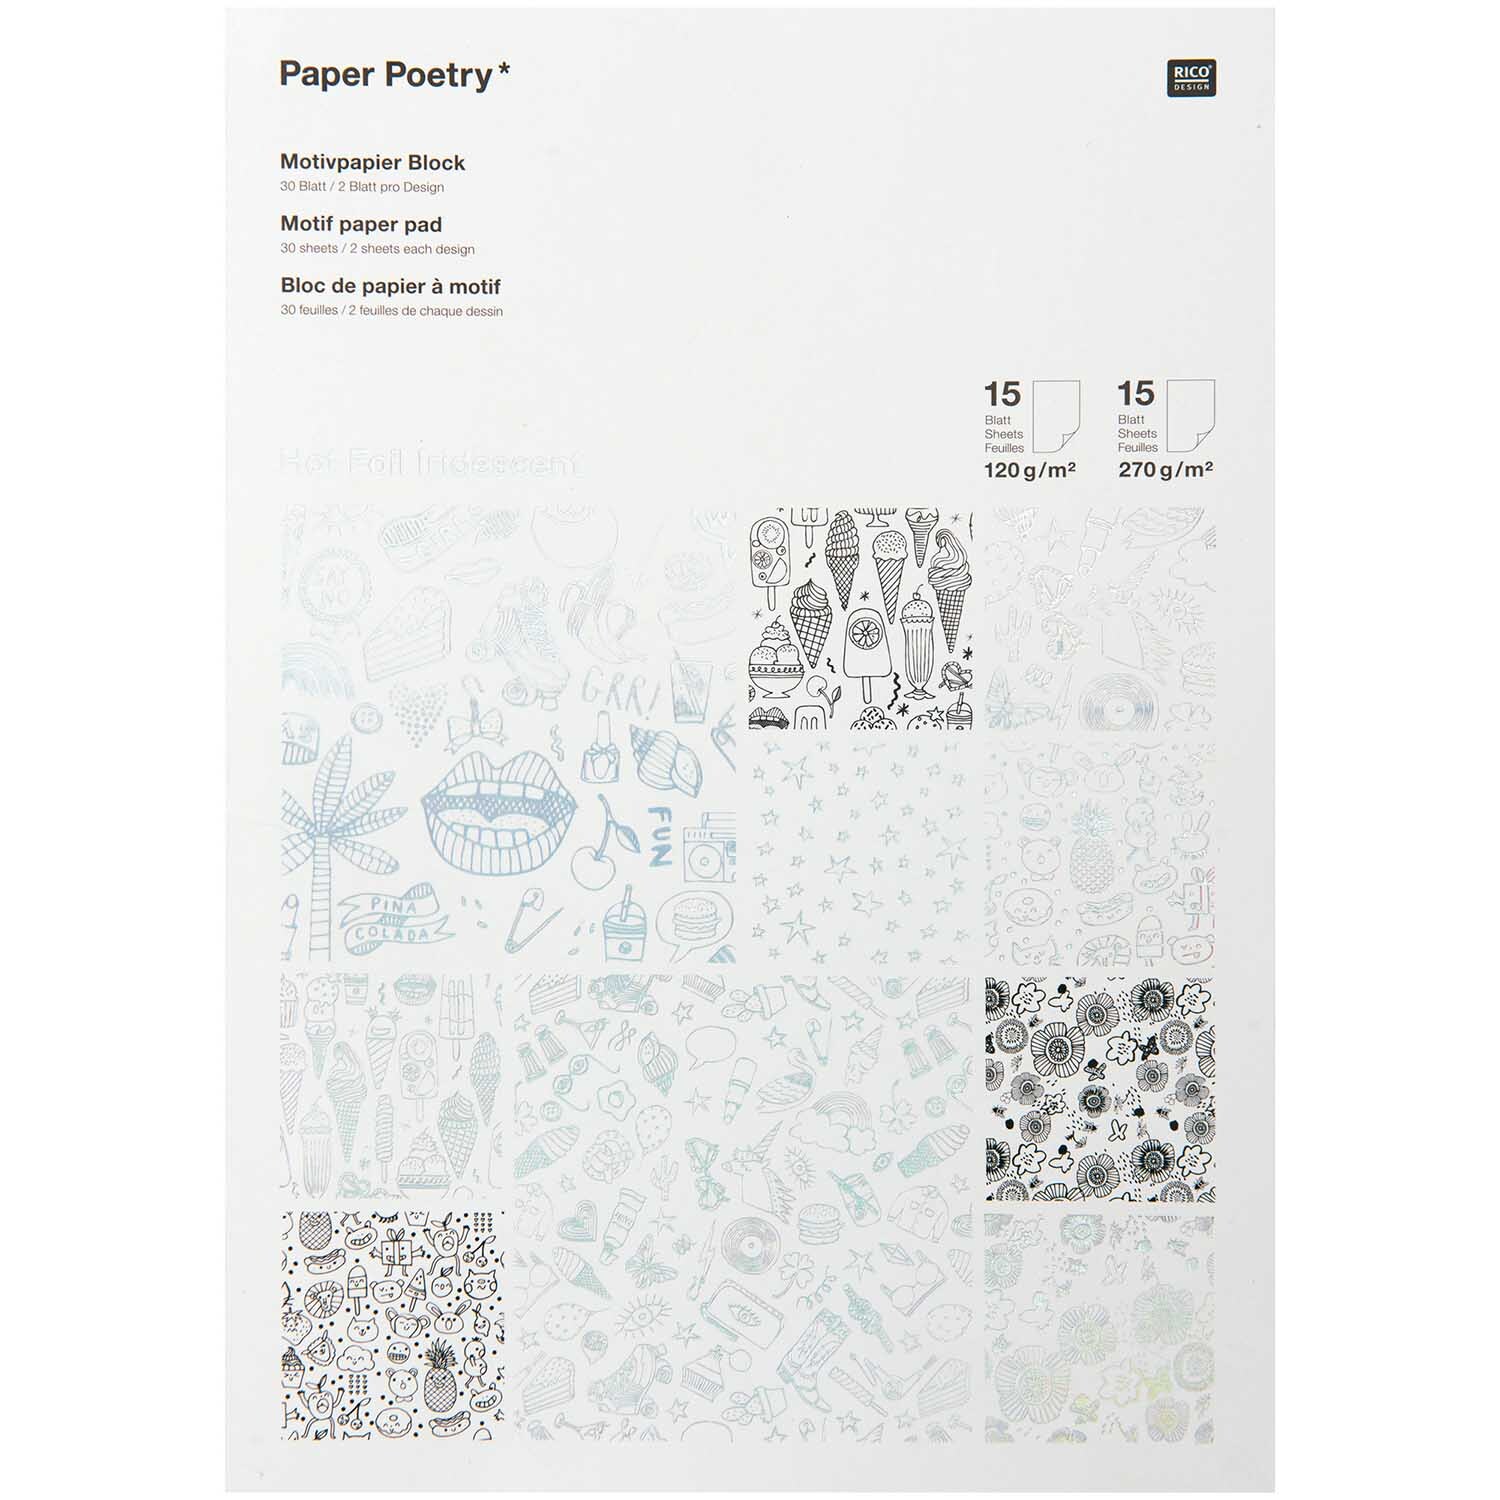 Paper Poetry Motivpapier Block schwarz-weiß 21x30cm 30 Blatt Hot Foil